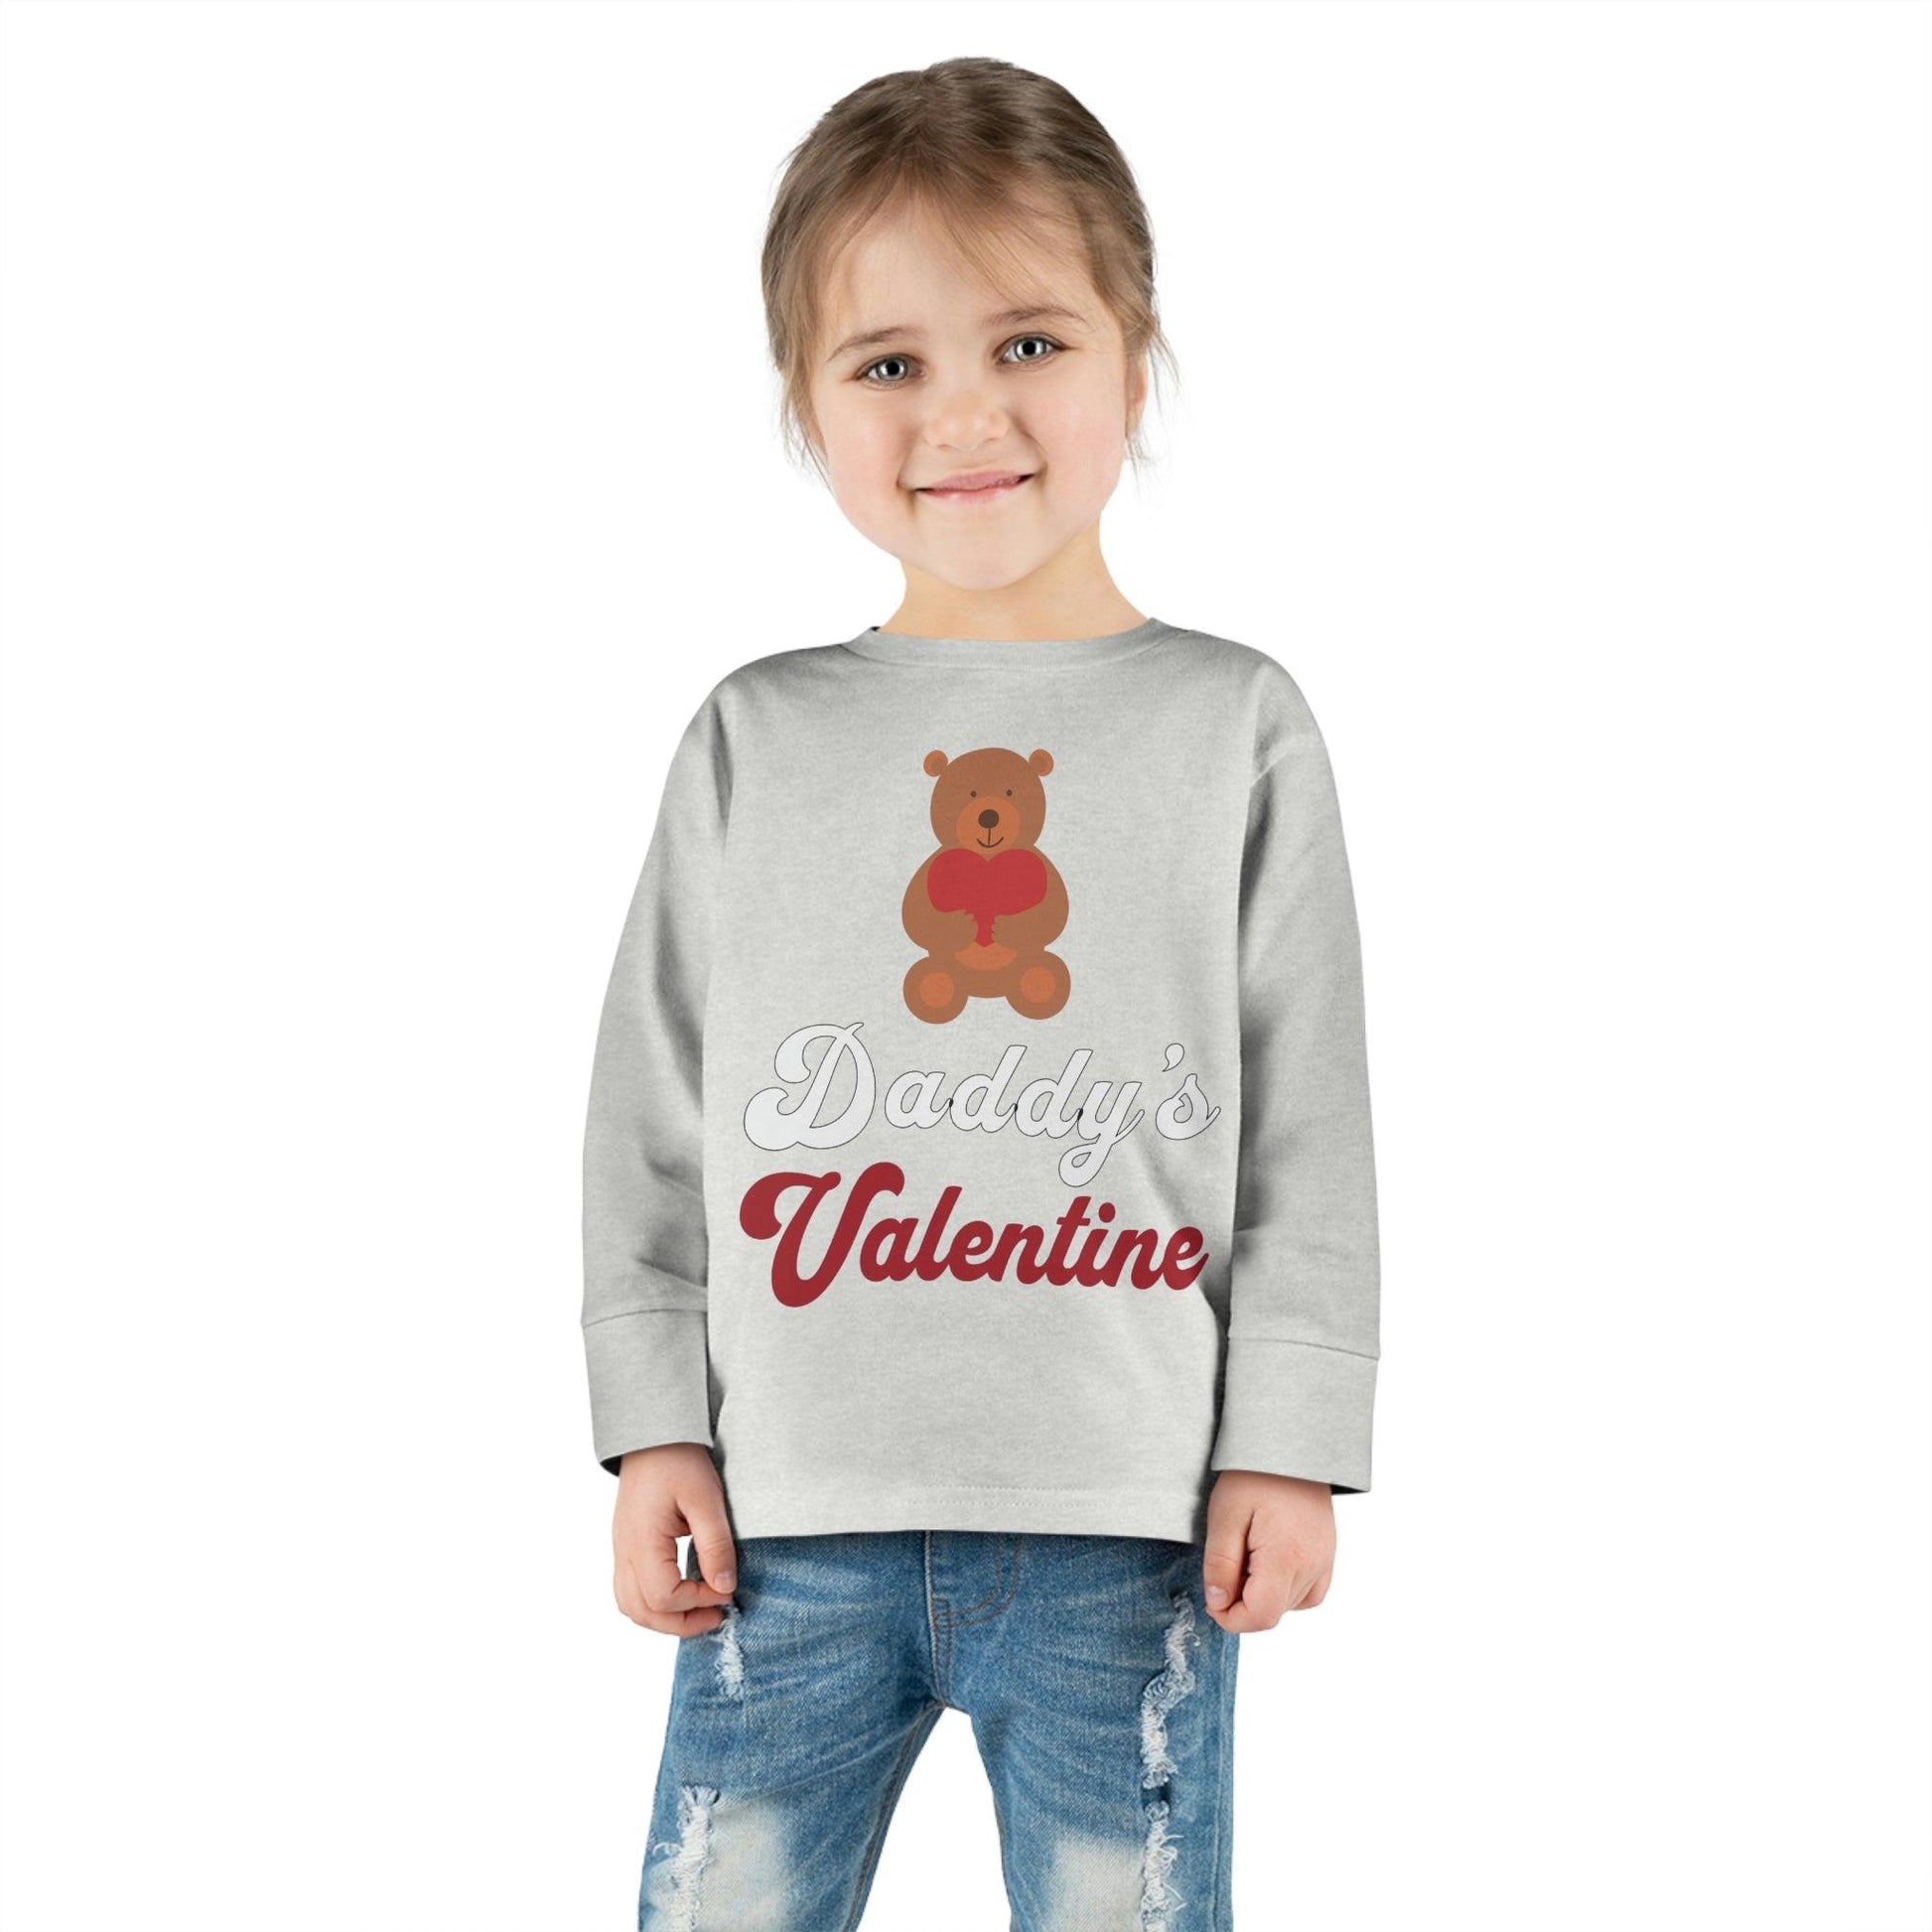 Kids Valentine shirt - Giftsmojo